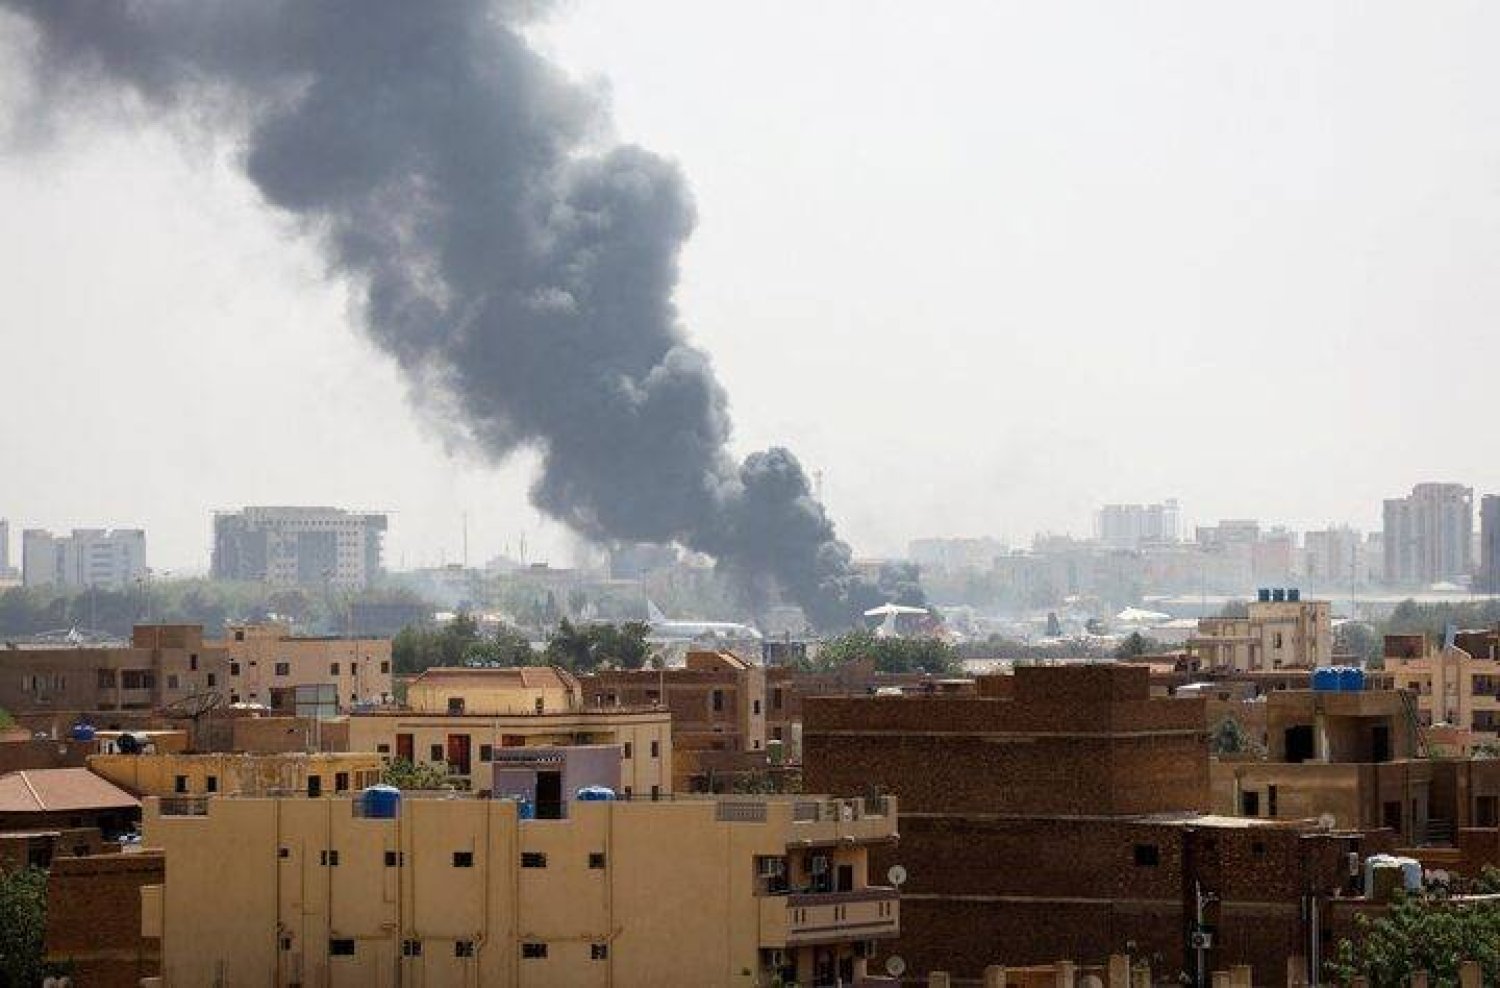 دخان قصف يتصاعد من مطار الخرطوم في وقت سابق (أرشيفية - رويترز)